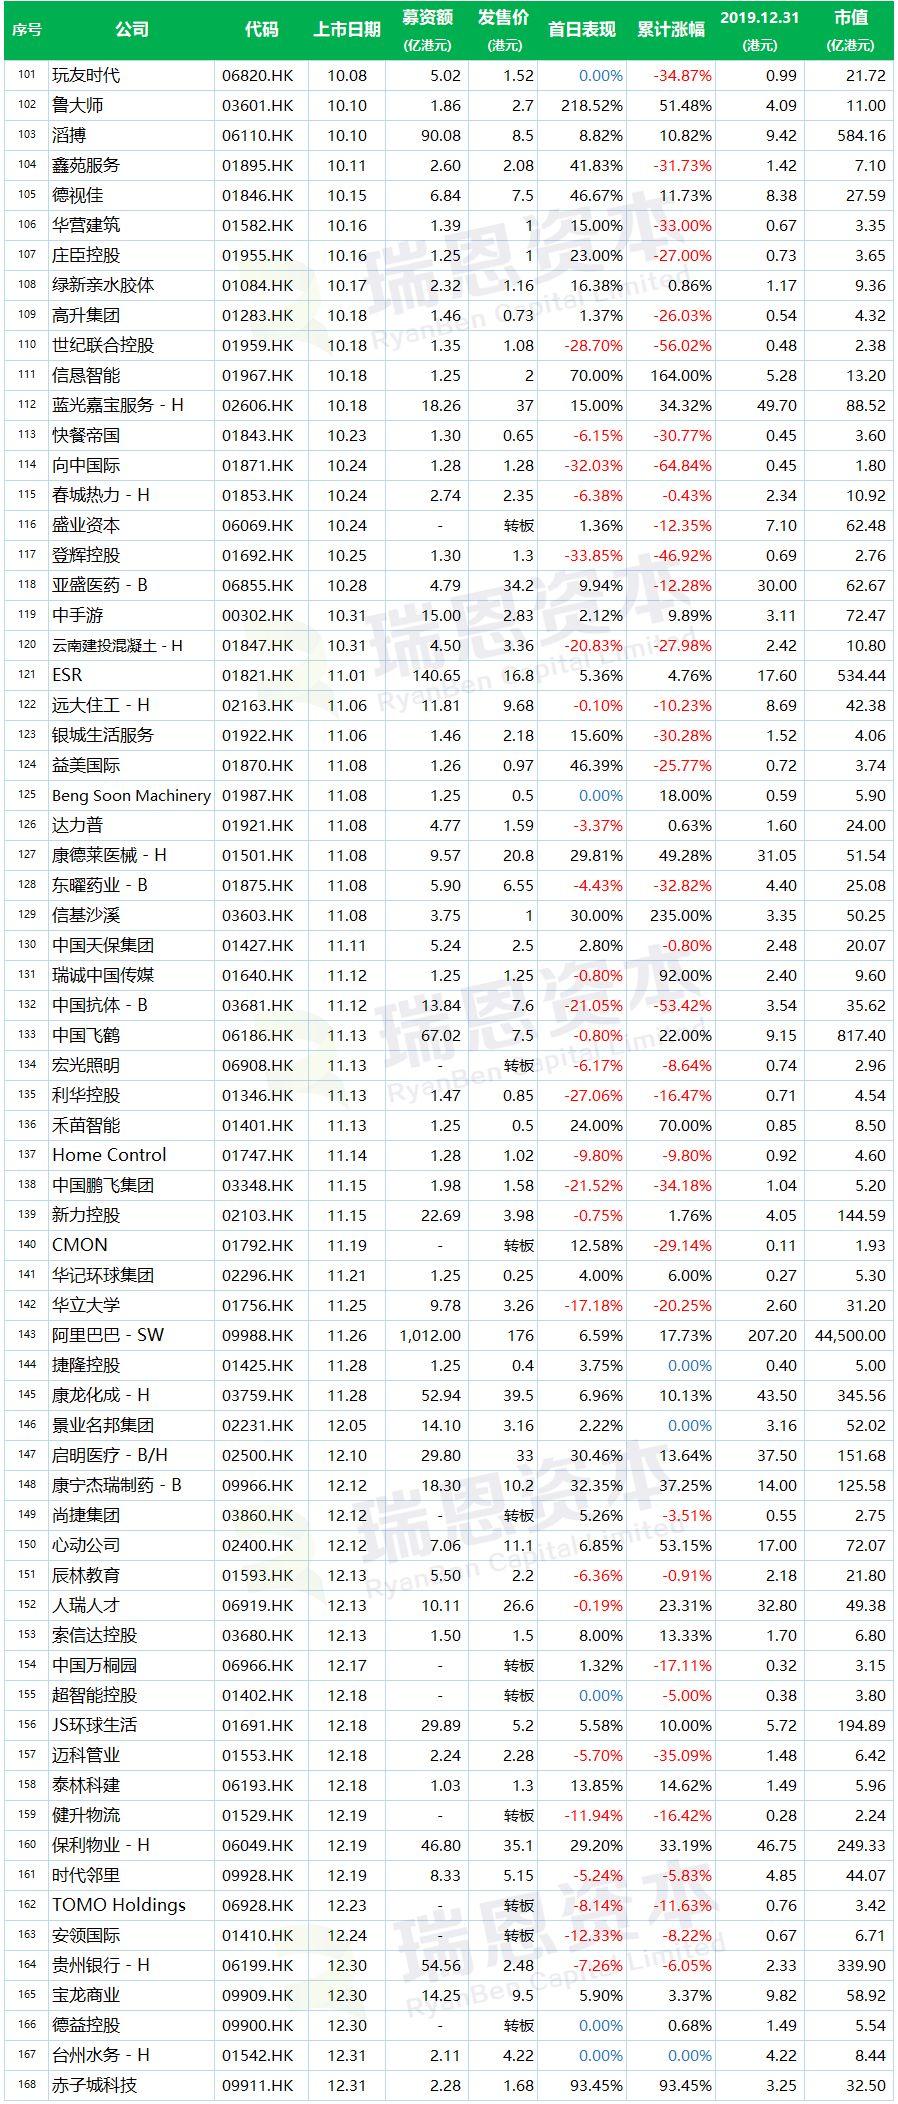 2019年香港新上市公司名单(183家)及其表现盘点